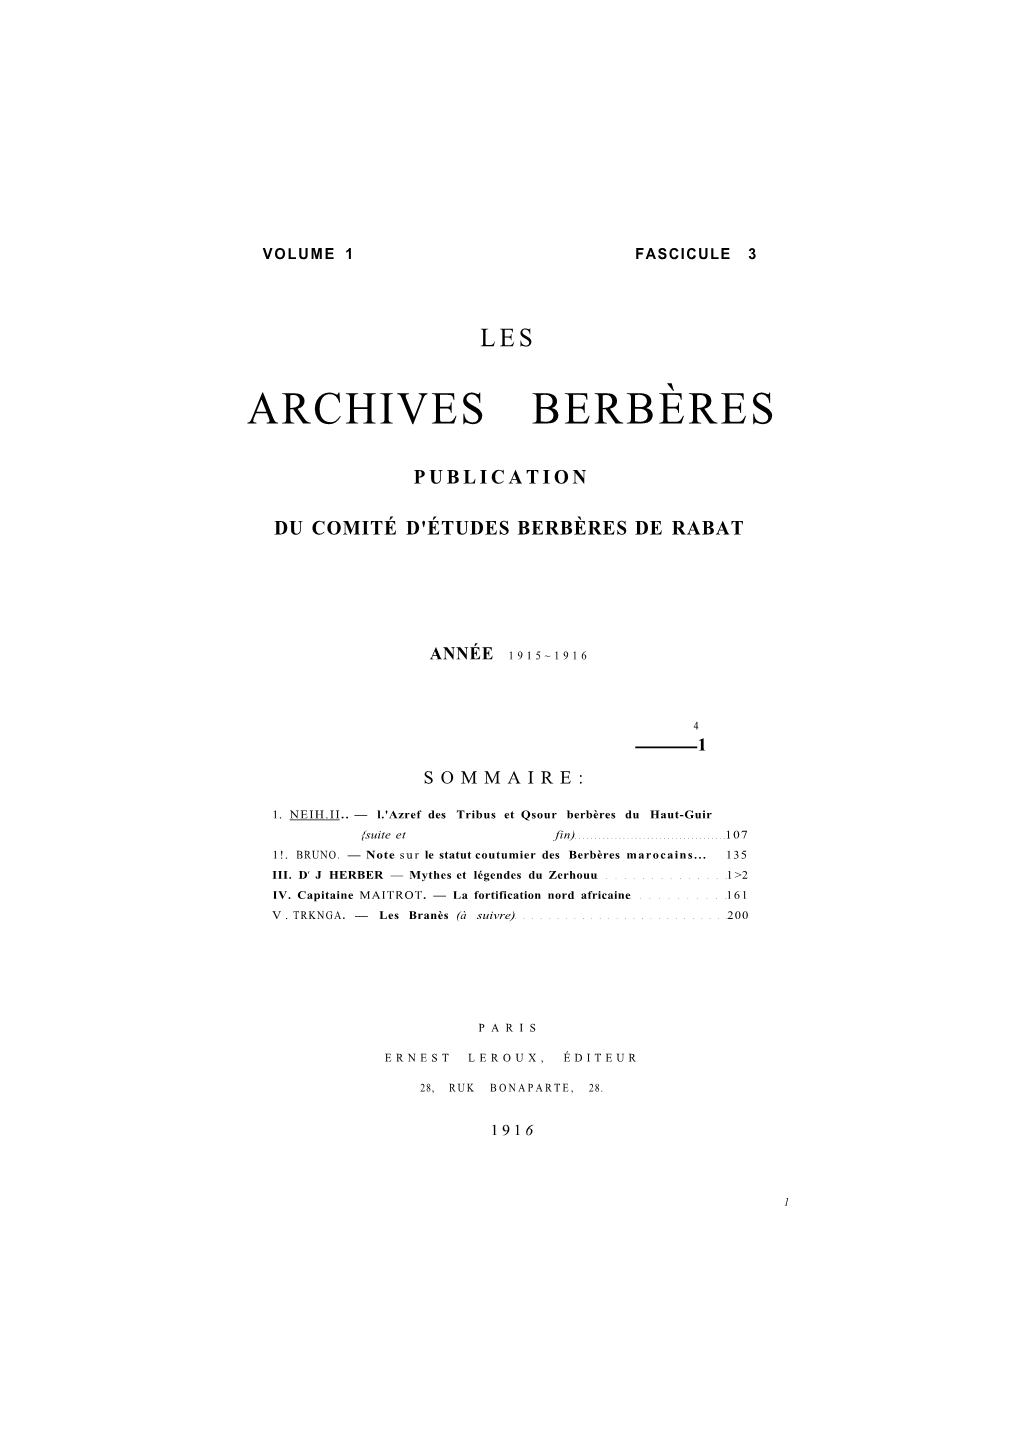 Archives Berbères